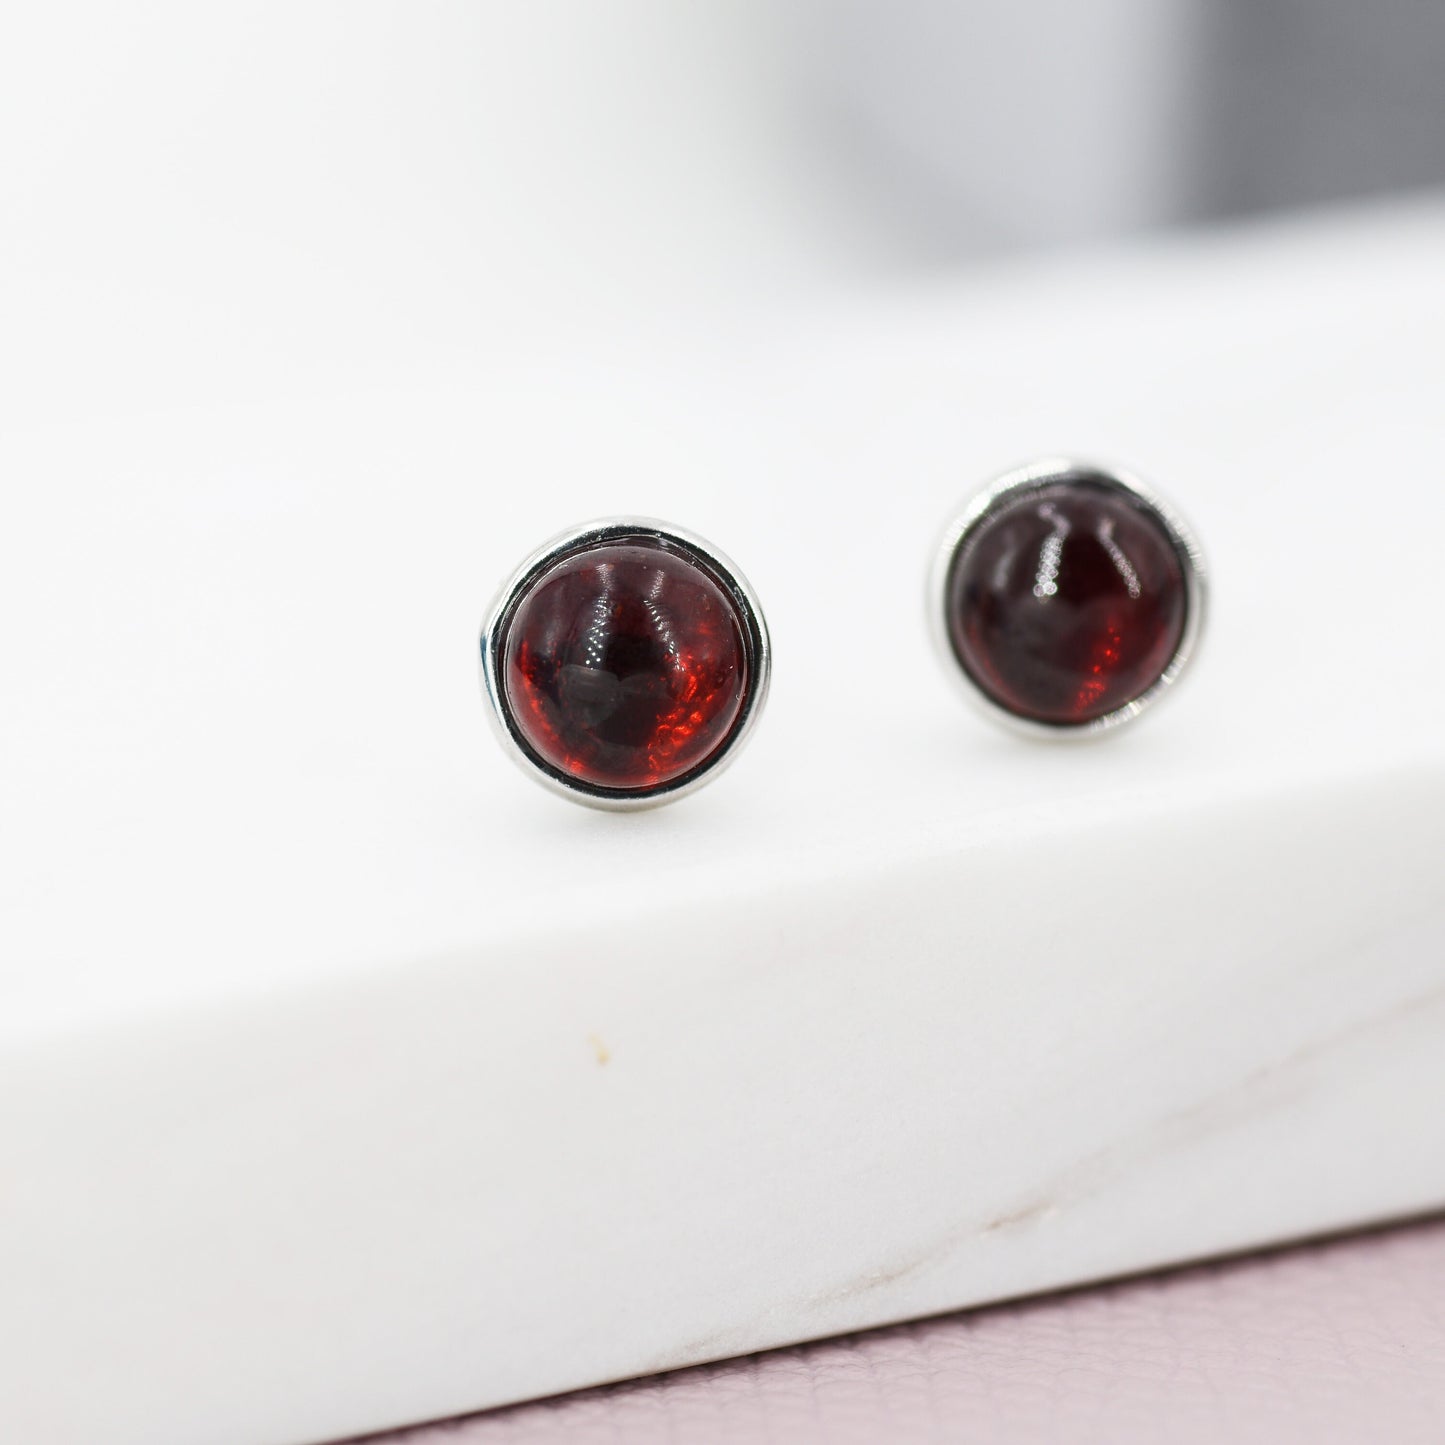 Natural Garnet Stud Earrings in Sterling Silver, 6mm Red Garnet, Dark Red, Genuine Gemstone, Minimalist Geometric Design